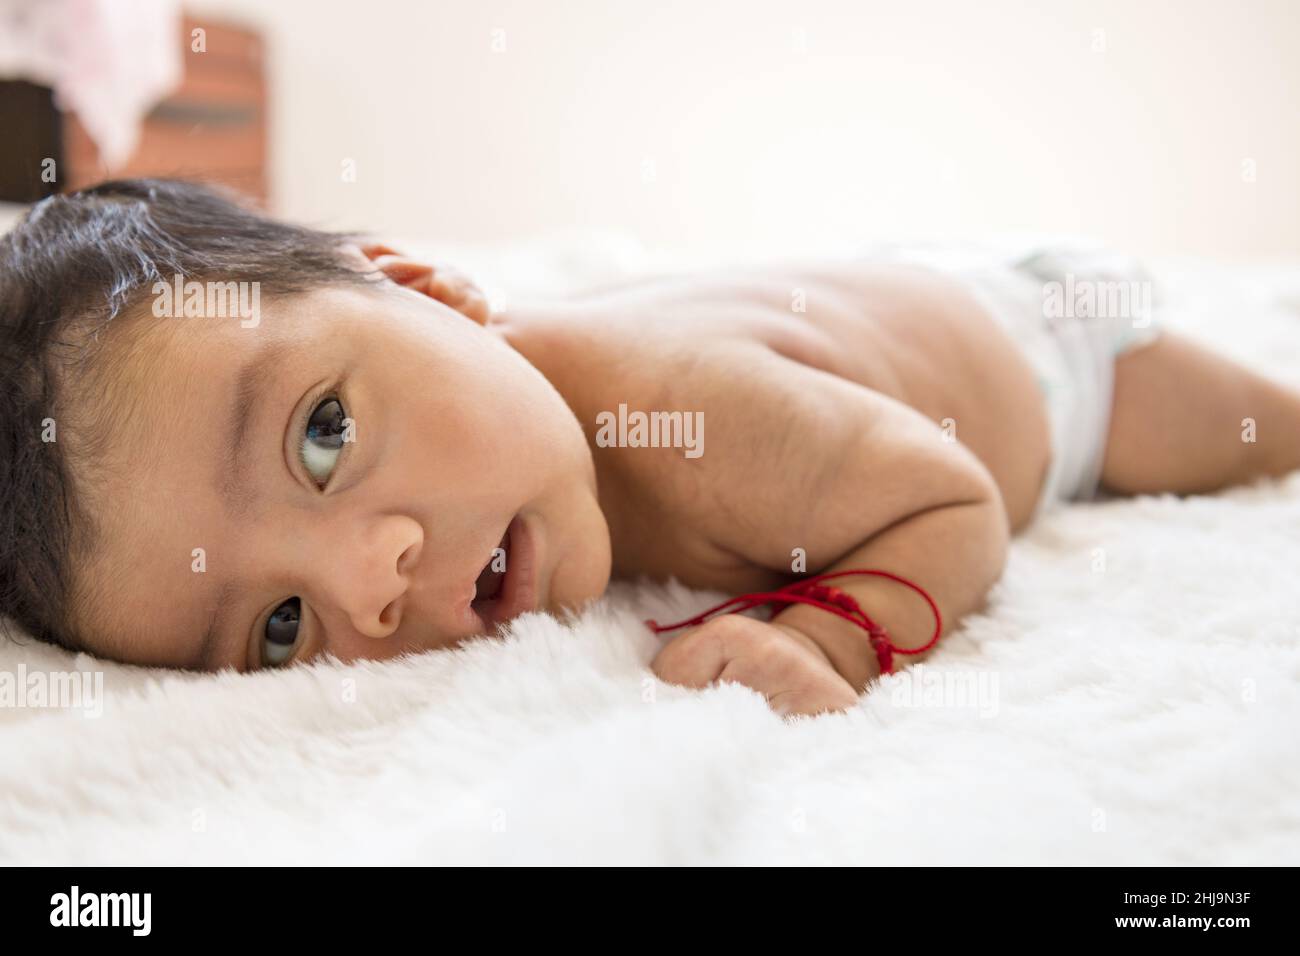 Schönes Baby, das auf dem Bauch liegt, mit Windel und rotem Armband, vollem Säuglingskörper, neugeborenem Lebensstil, Unschuld Stockfoto